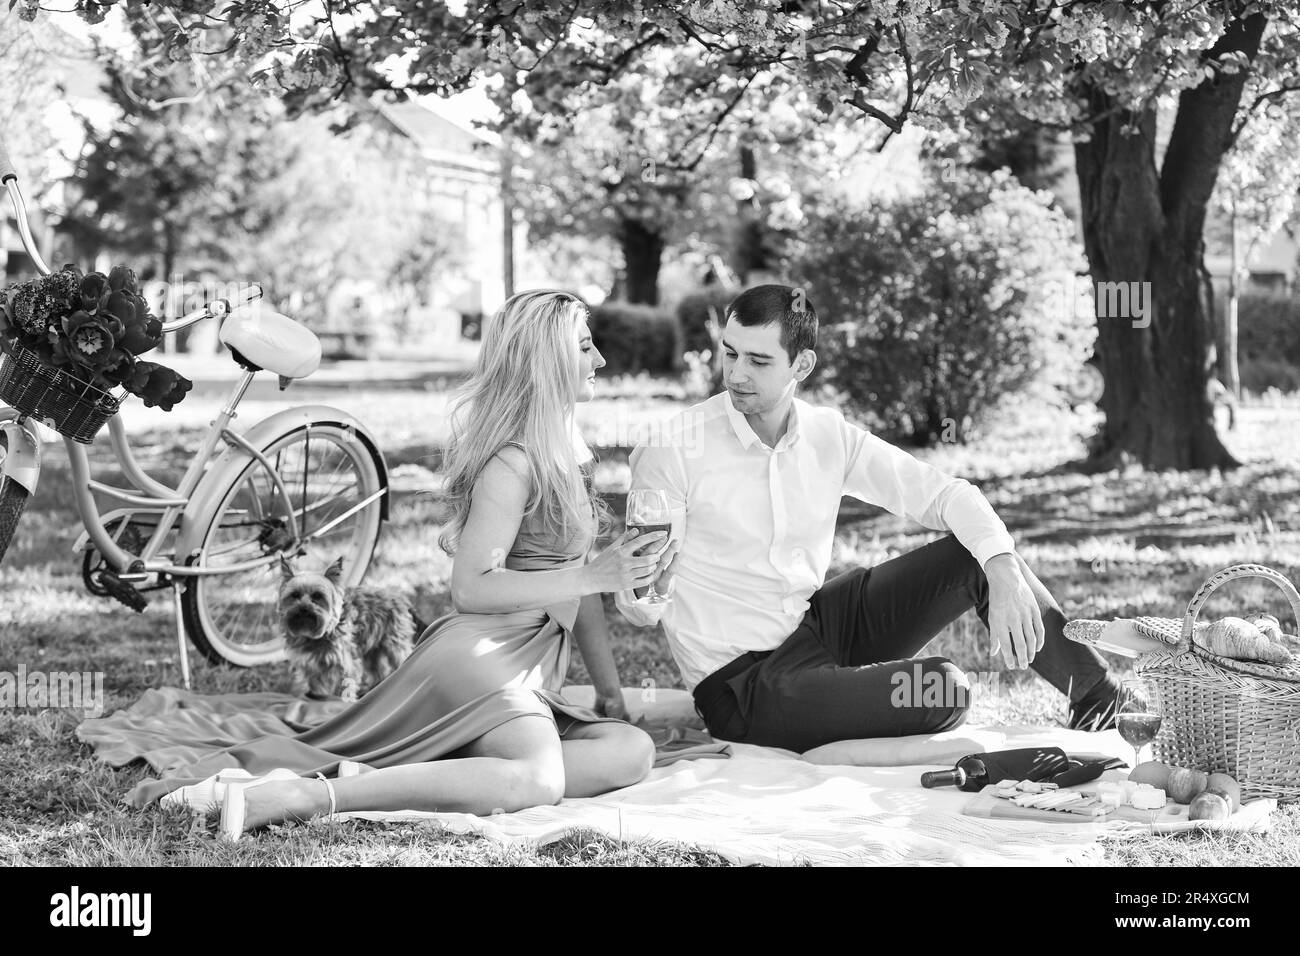 Per sempre il vostro. Fare un picnic nel parco cittadino. L'uomo e la donna si rilassano con il cestino del cibo. Coppia romantica sotto l'albero dei fiori di sakura. Coppia innamorata Foto Stock